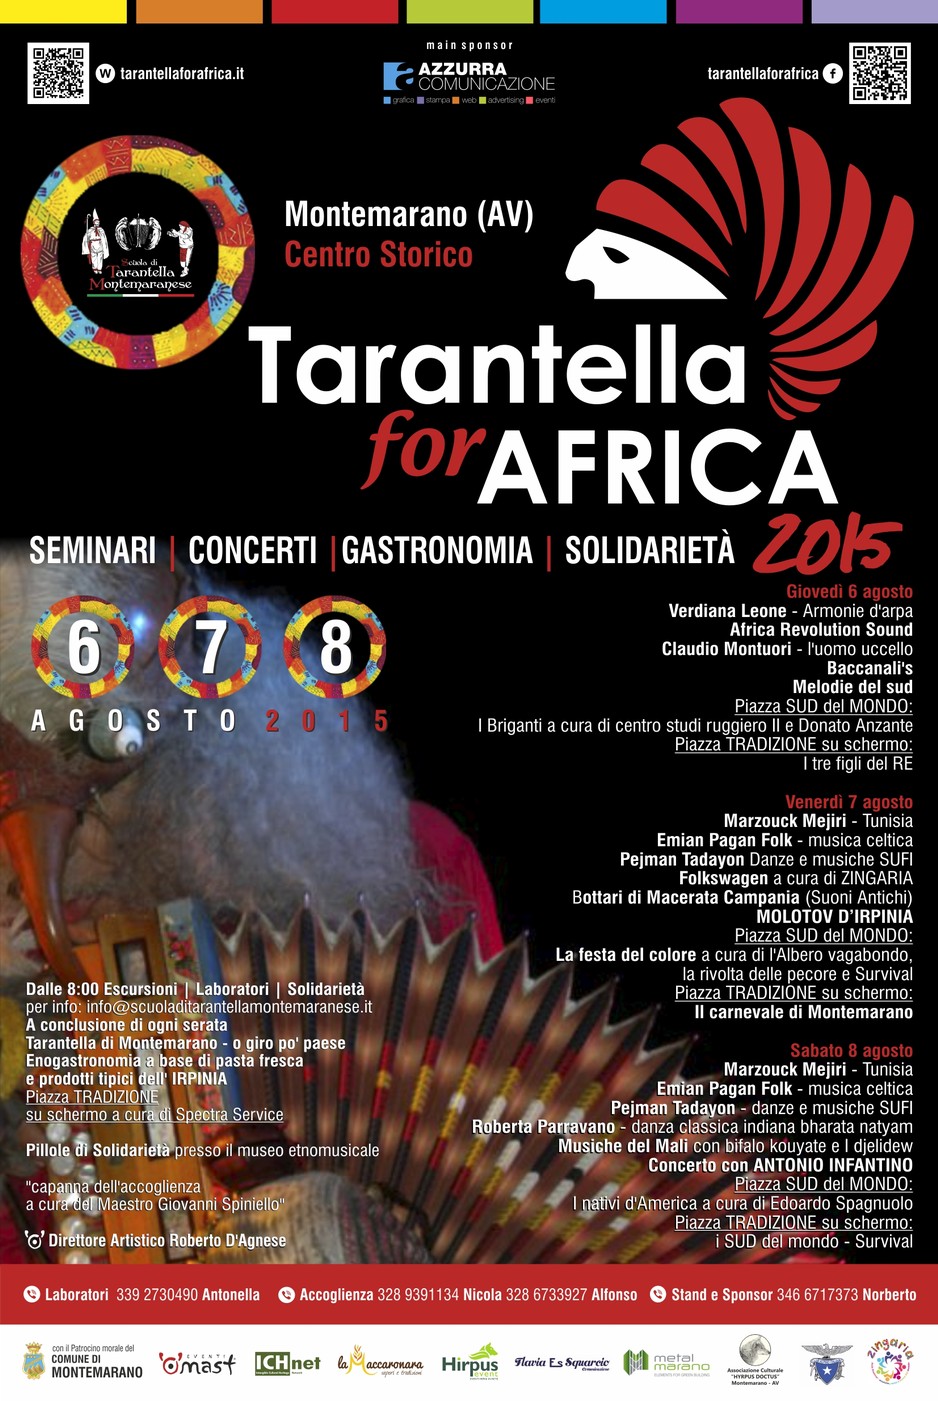  “Tarantella for Africa”, solidarietà e tradizione a Montemarano